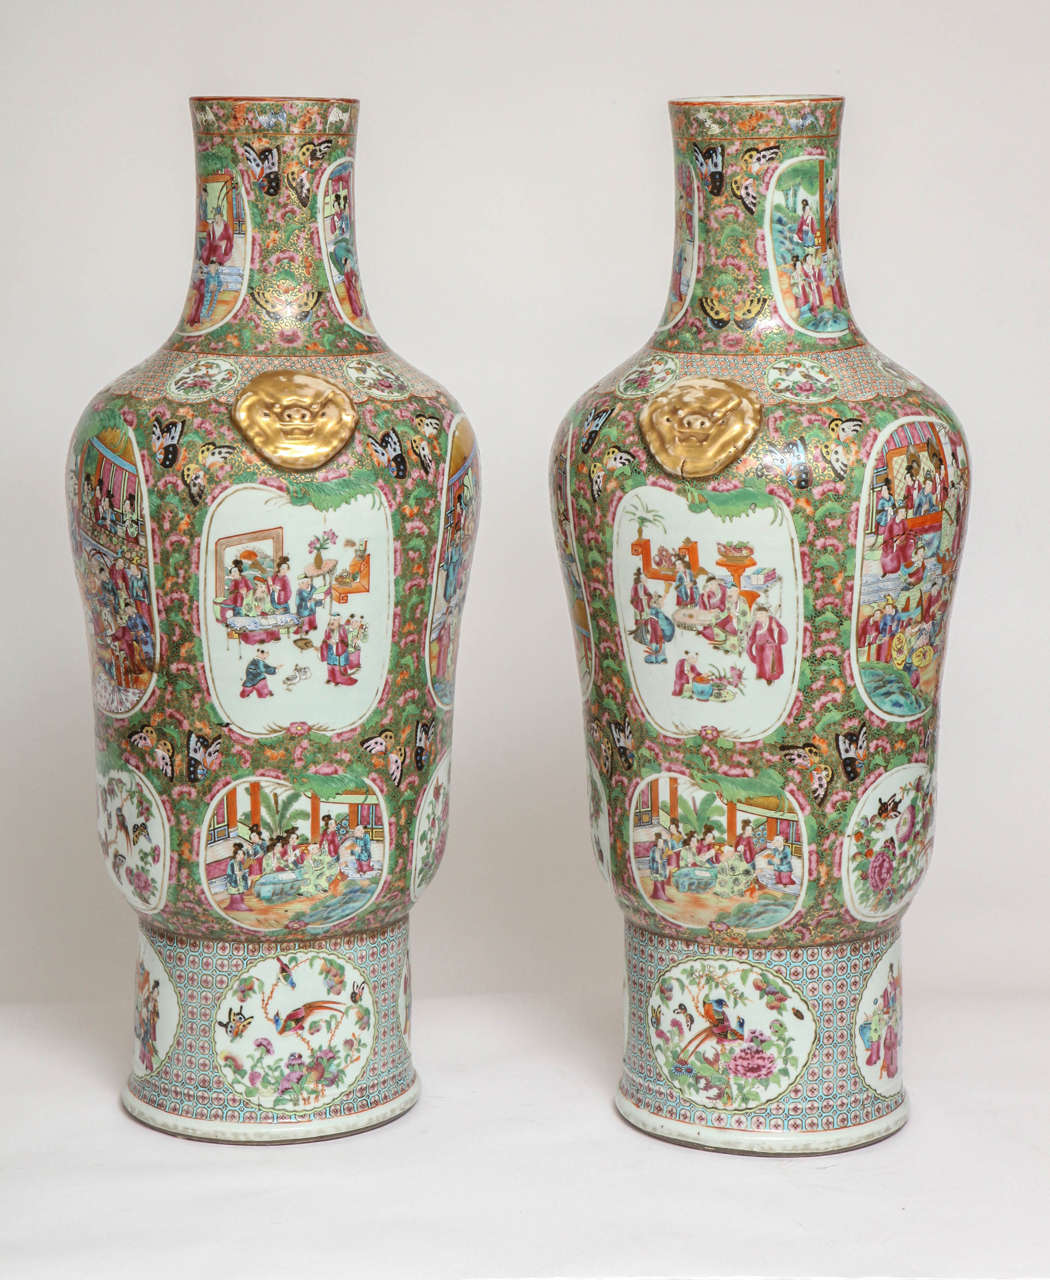 Une paire inhabituelle de grands vases en porcelaine d'exportation chinoise de la famille rose aux mille papillons. Ce vase a une forme très inhabituelle et a très probablement été fabriqué sur commande spécifique. L'ensemble du vase est peint sur